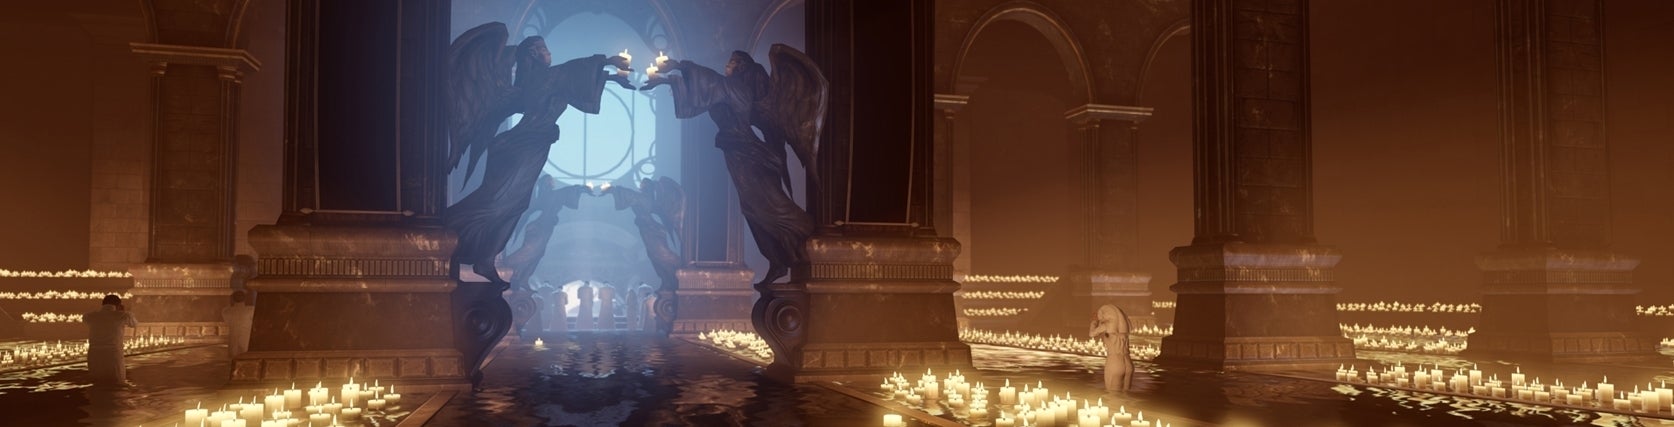 Image for BioShock Infinite ending explained